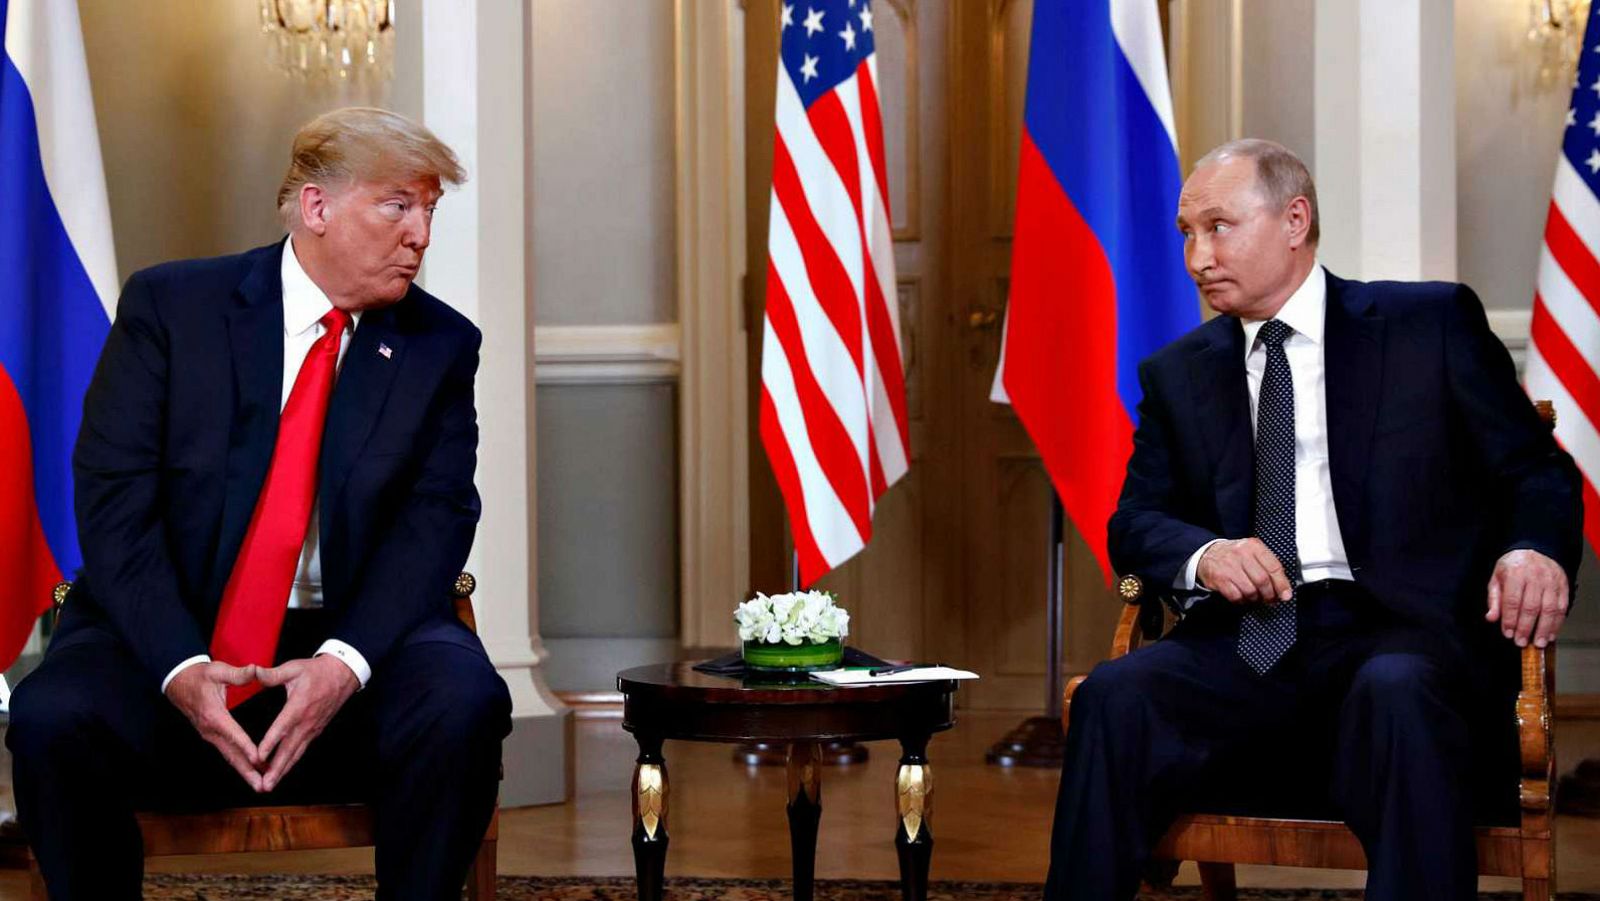 El presidente de Estados Unidos, Donald Trump, y el presidente de Rusia, Vladimir Putin, en una imagen de archivo.